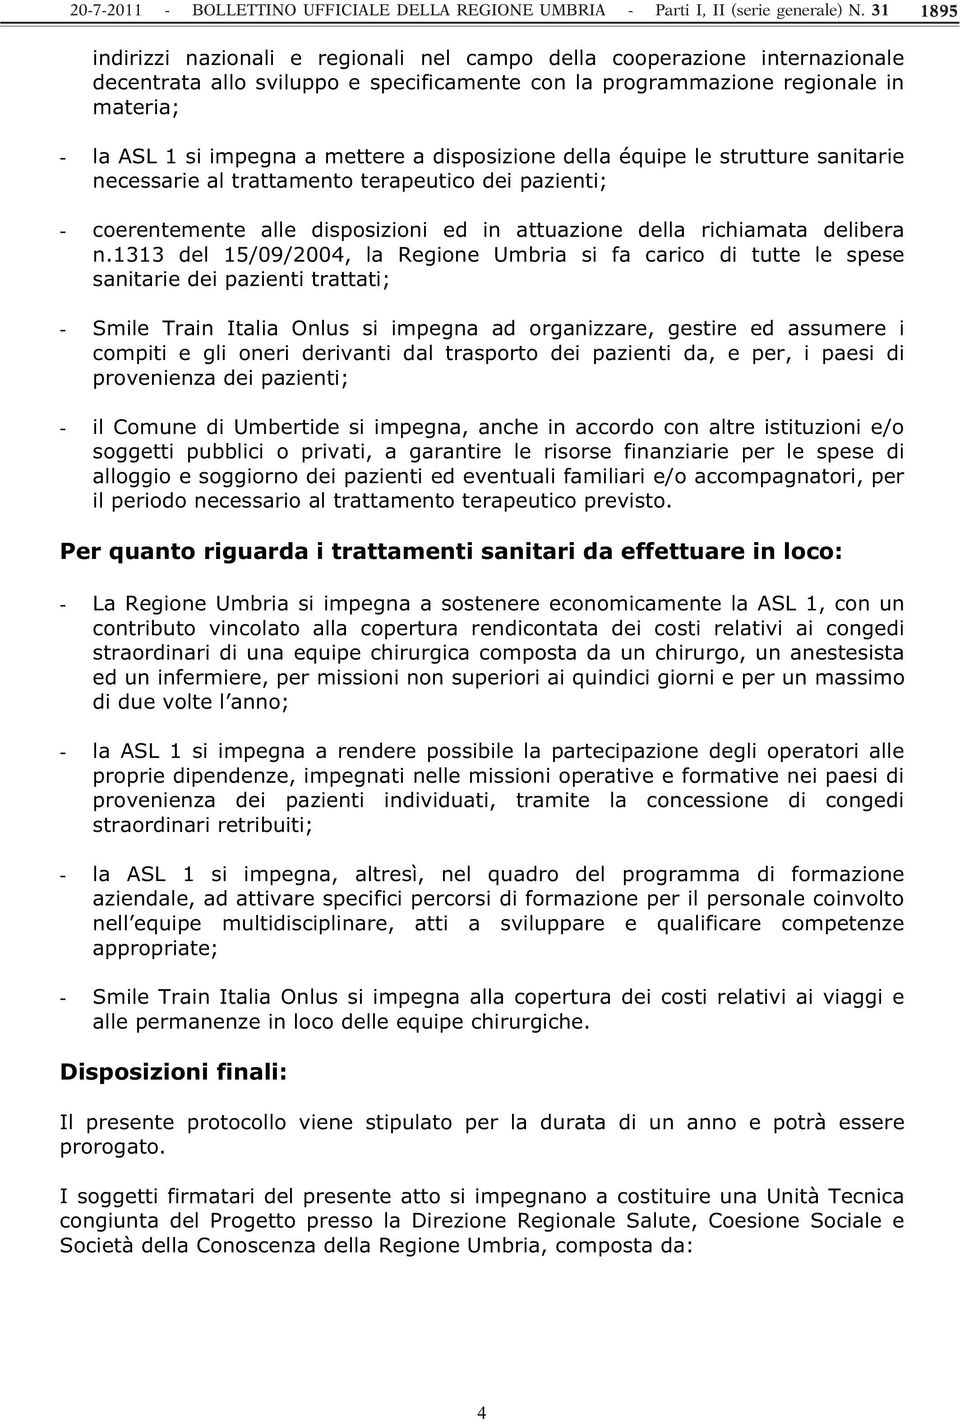 1313 del 15/09/2004, la Regione Umbria si fa carico di tutte le spese sanitarie dei pazienti trattati; - Smile Train Italia Onlus si impegna ad organizzare, gestire ed assumere i compiti e gli oneri